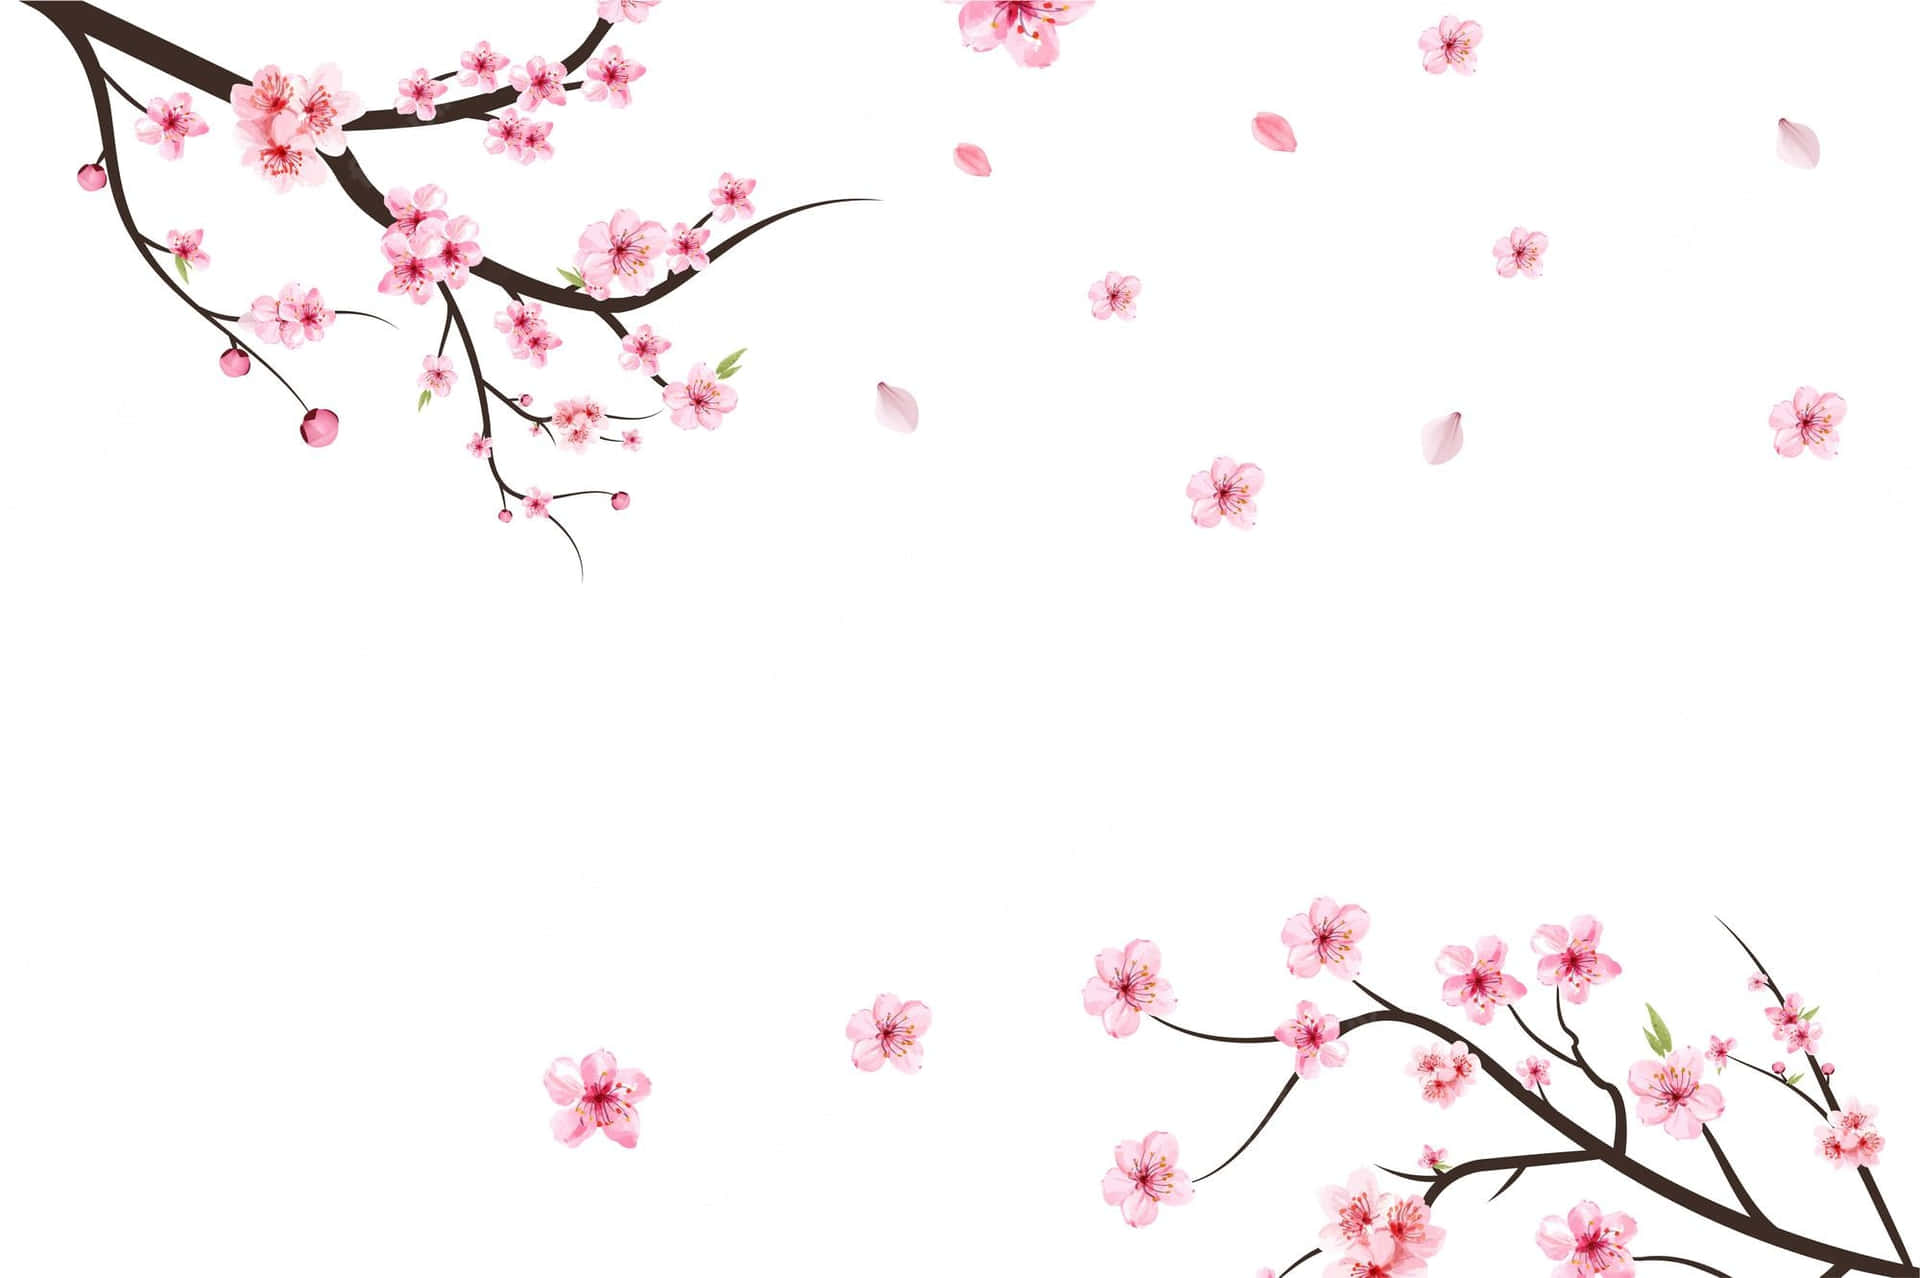 Ettfält Av Sakurablommande Träd I Full Blom. Wallpaper